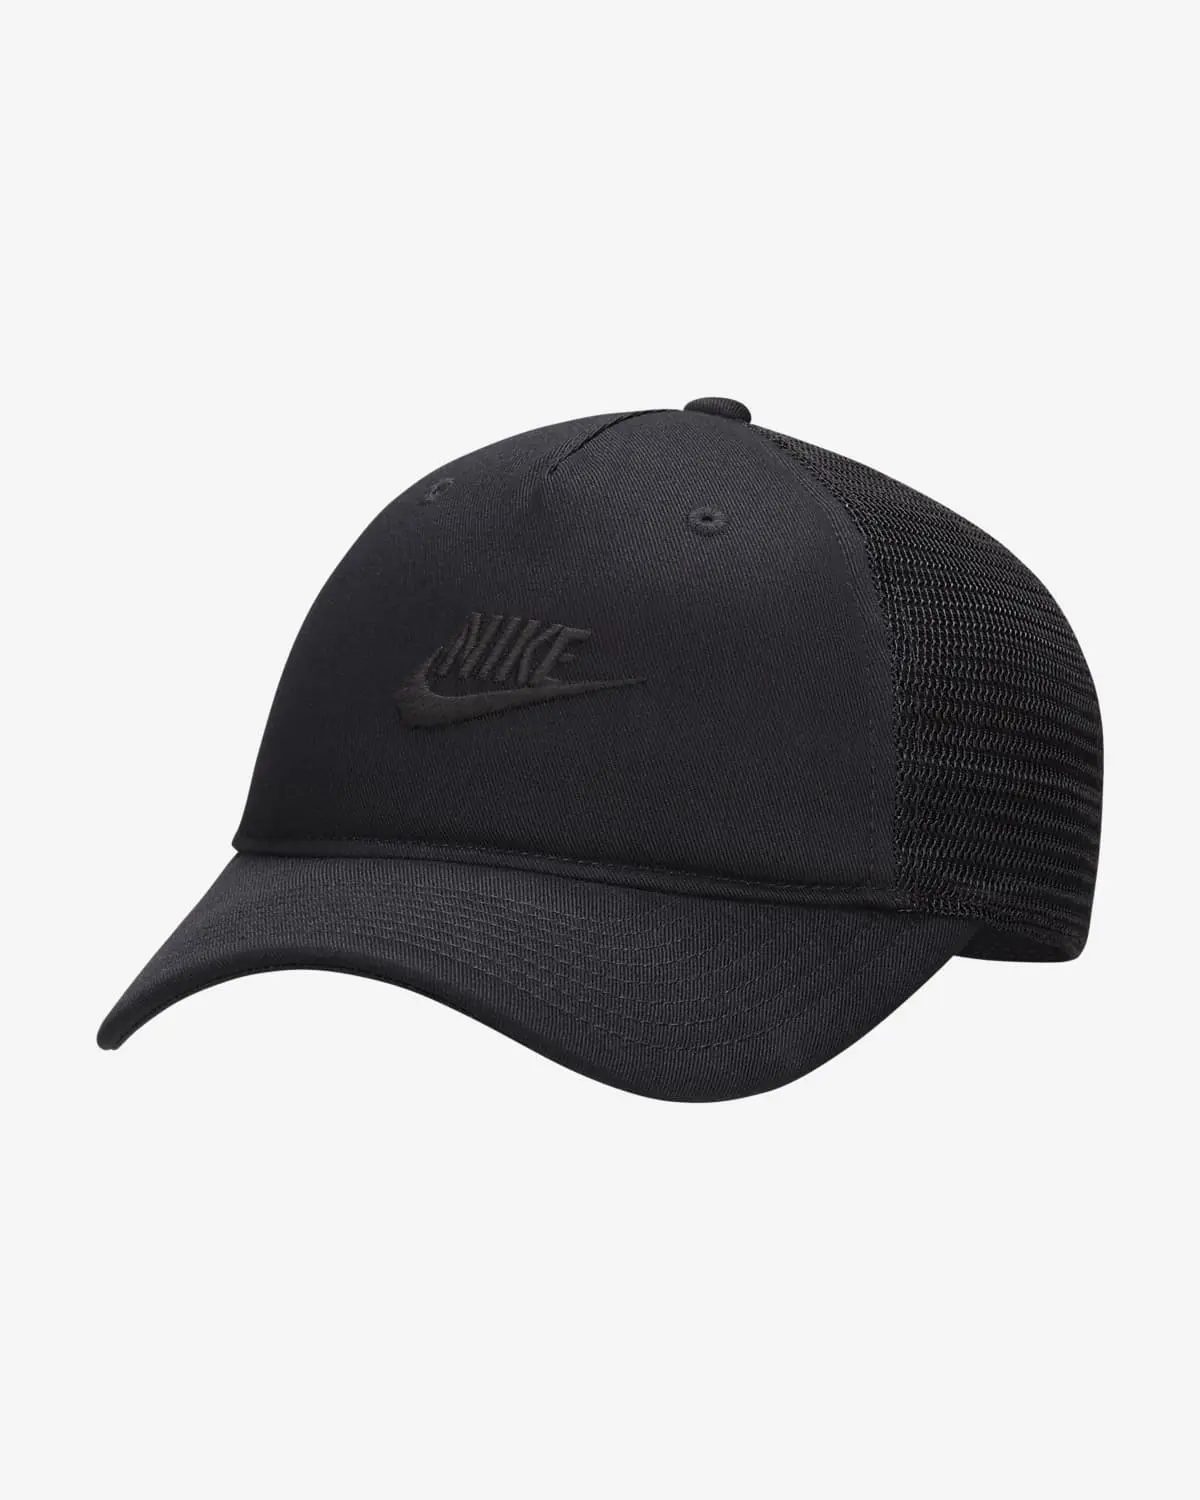 Nike Rise Cap. 1